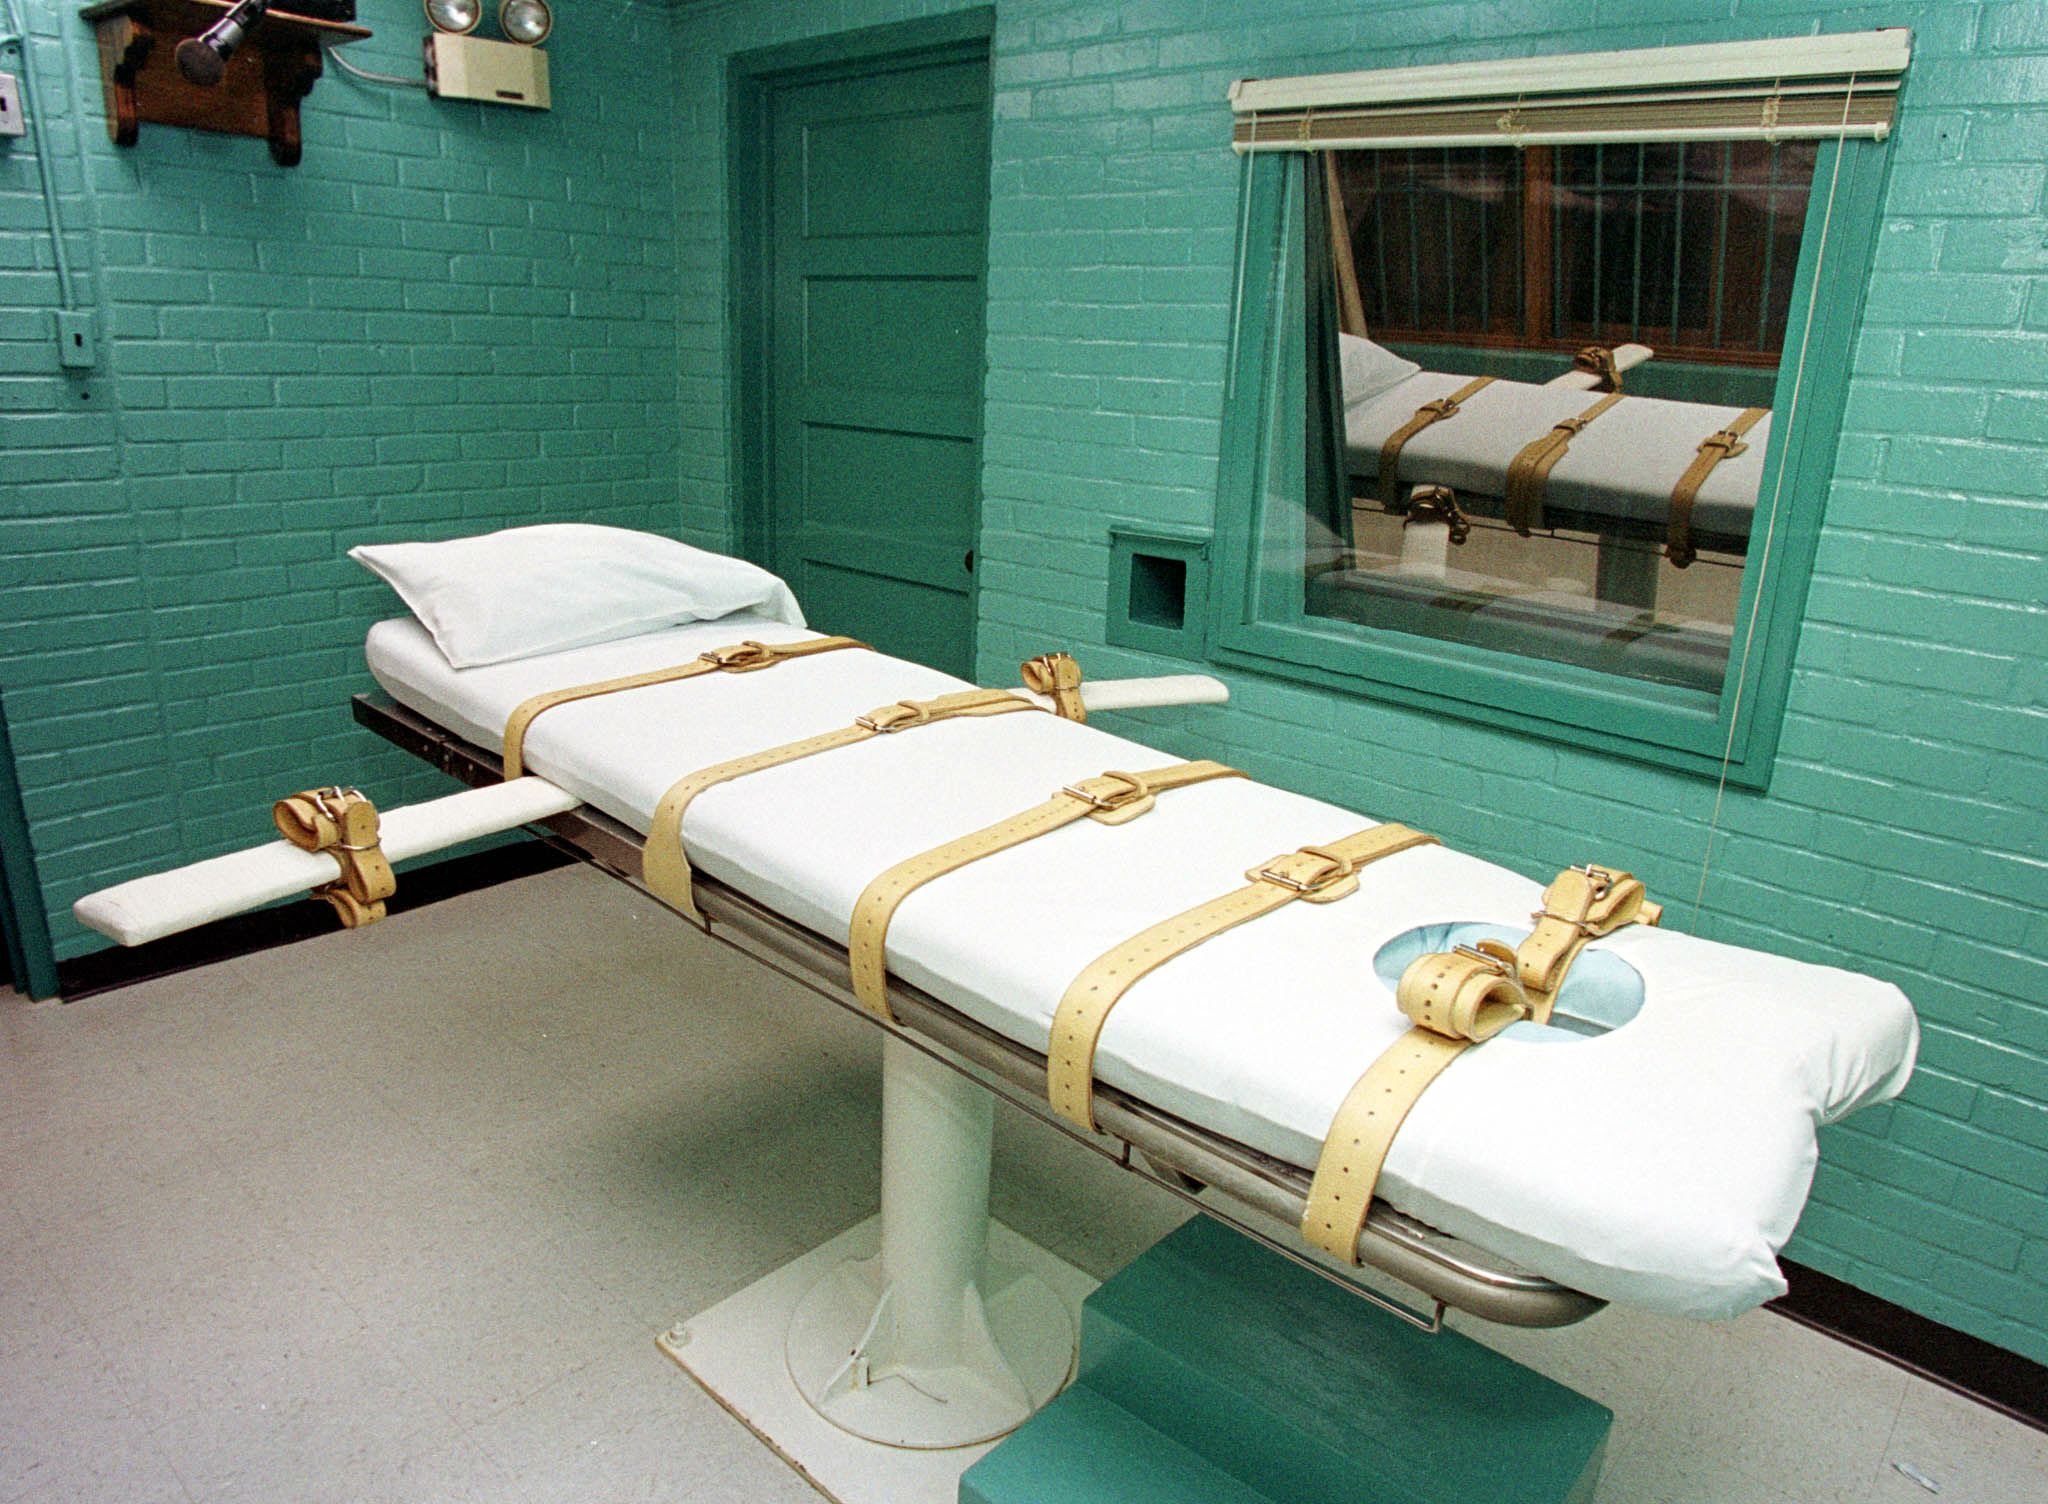 Kivégzőkamra a texasi büntetés-végrehajtás huntsville-i börtönében